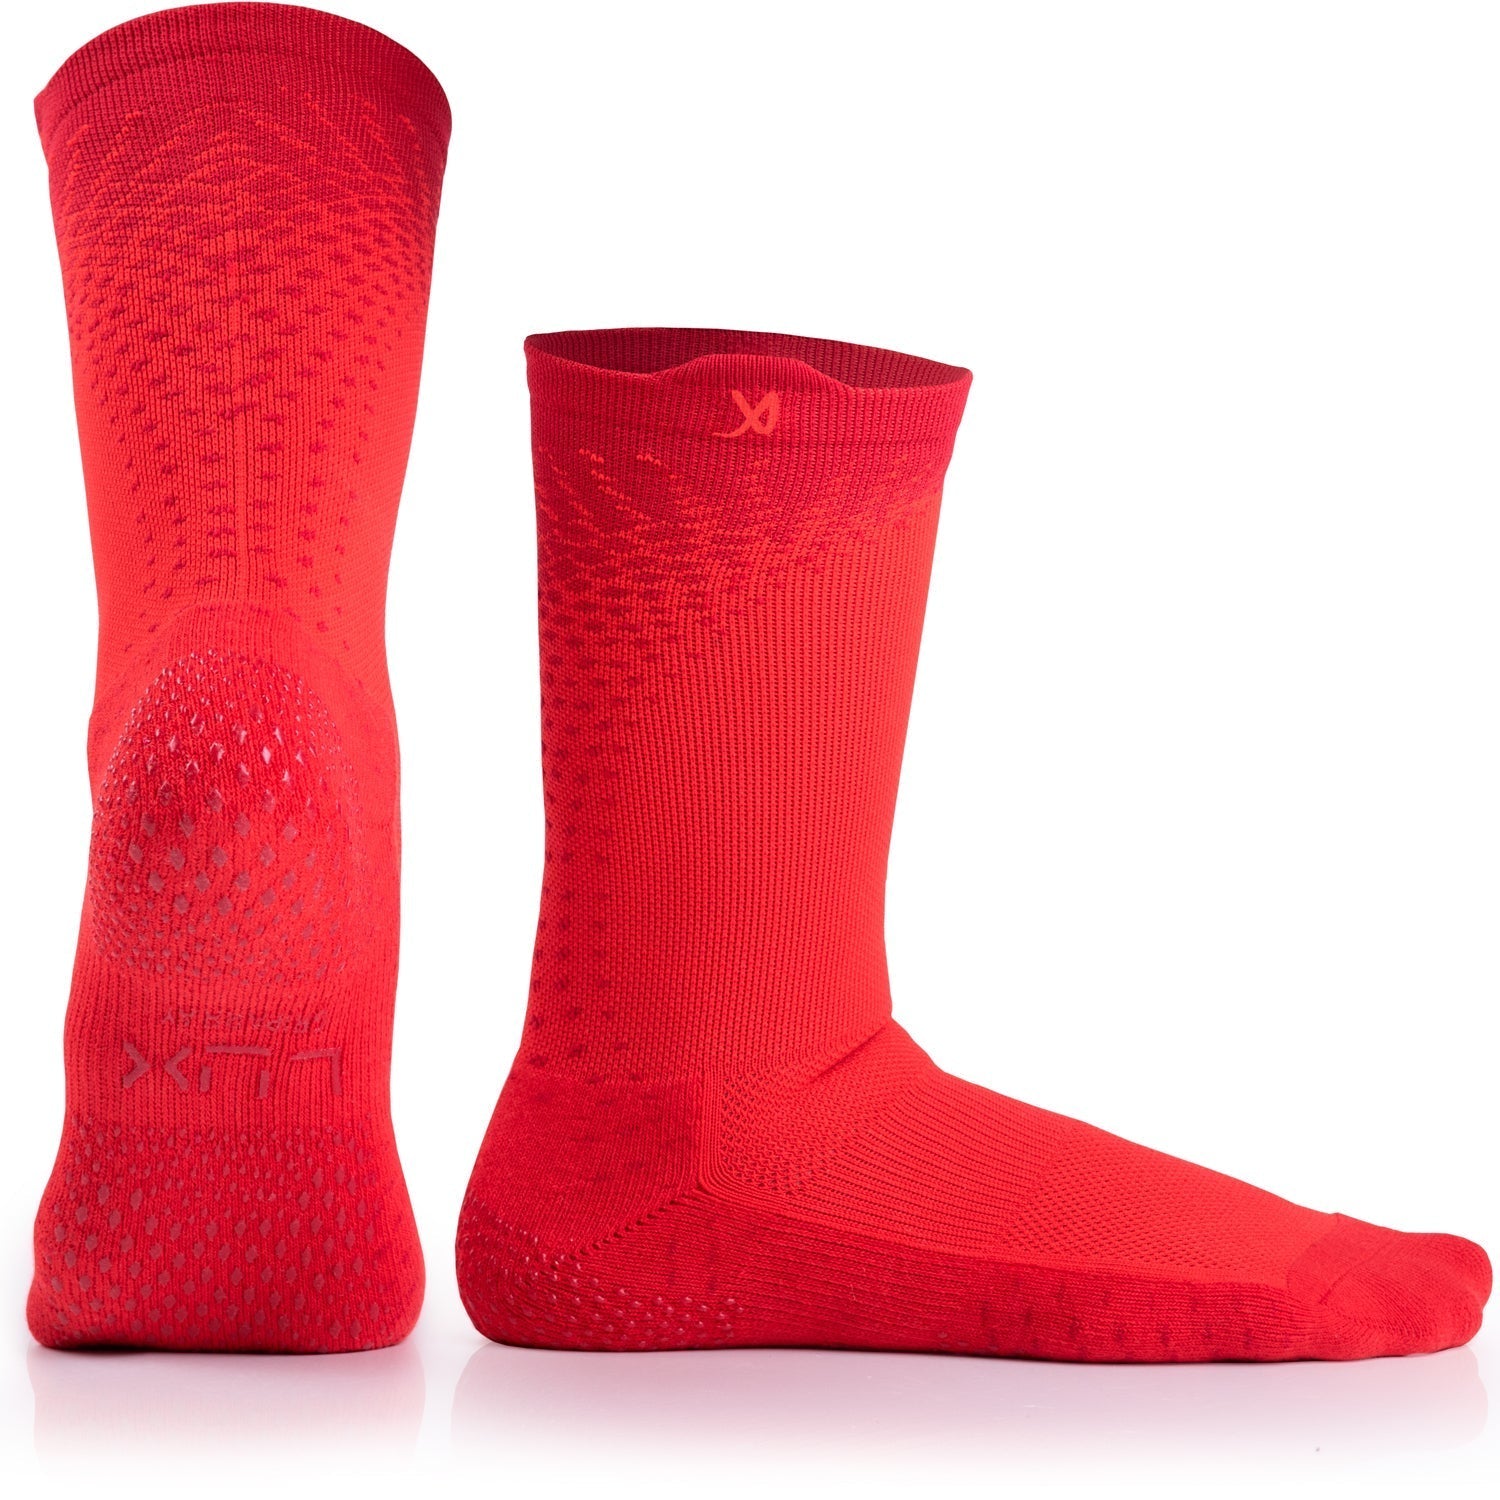 LUX V2 Anti-Slip Soccer Socks (Calf) - Red